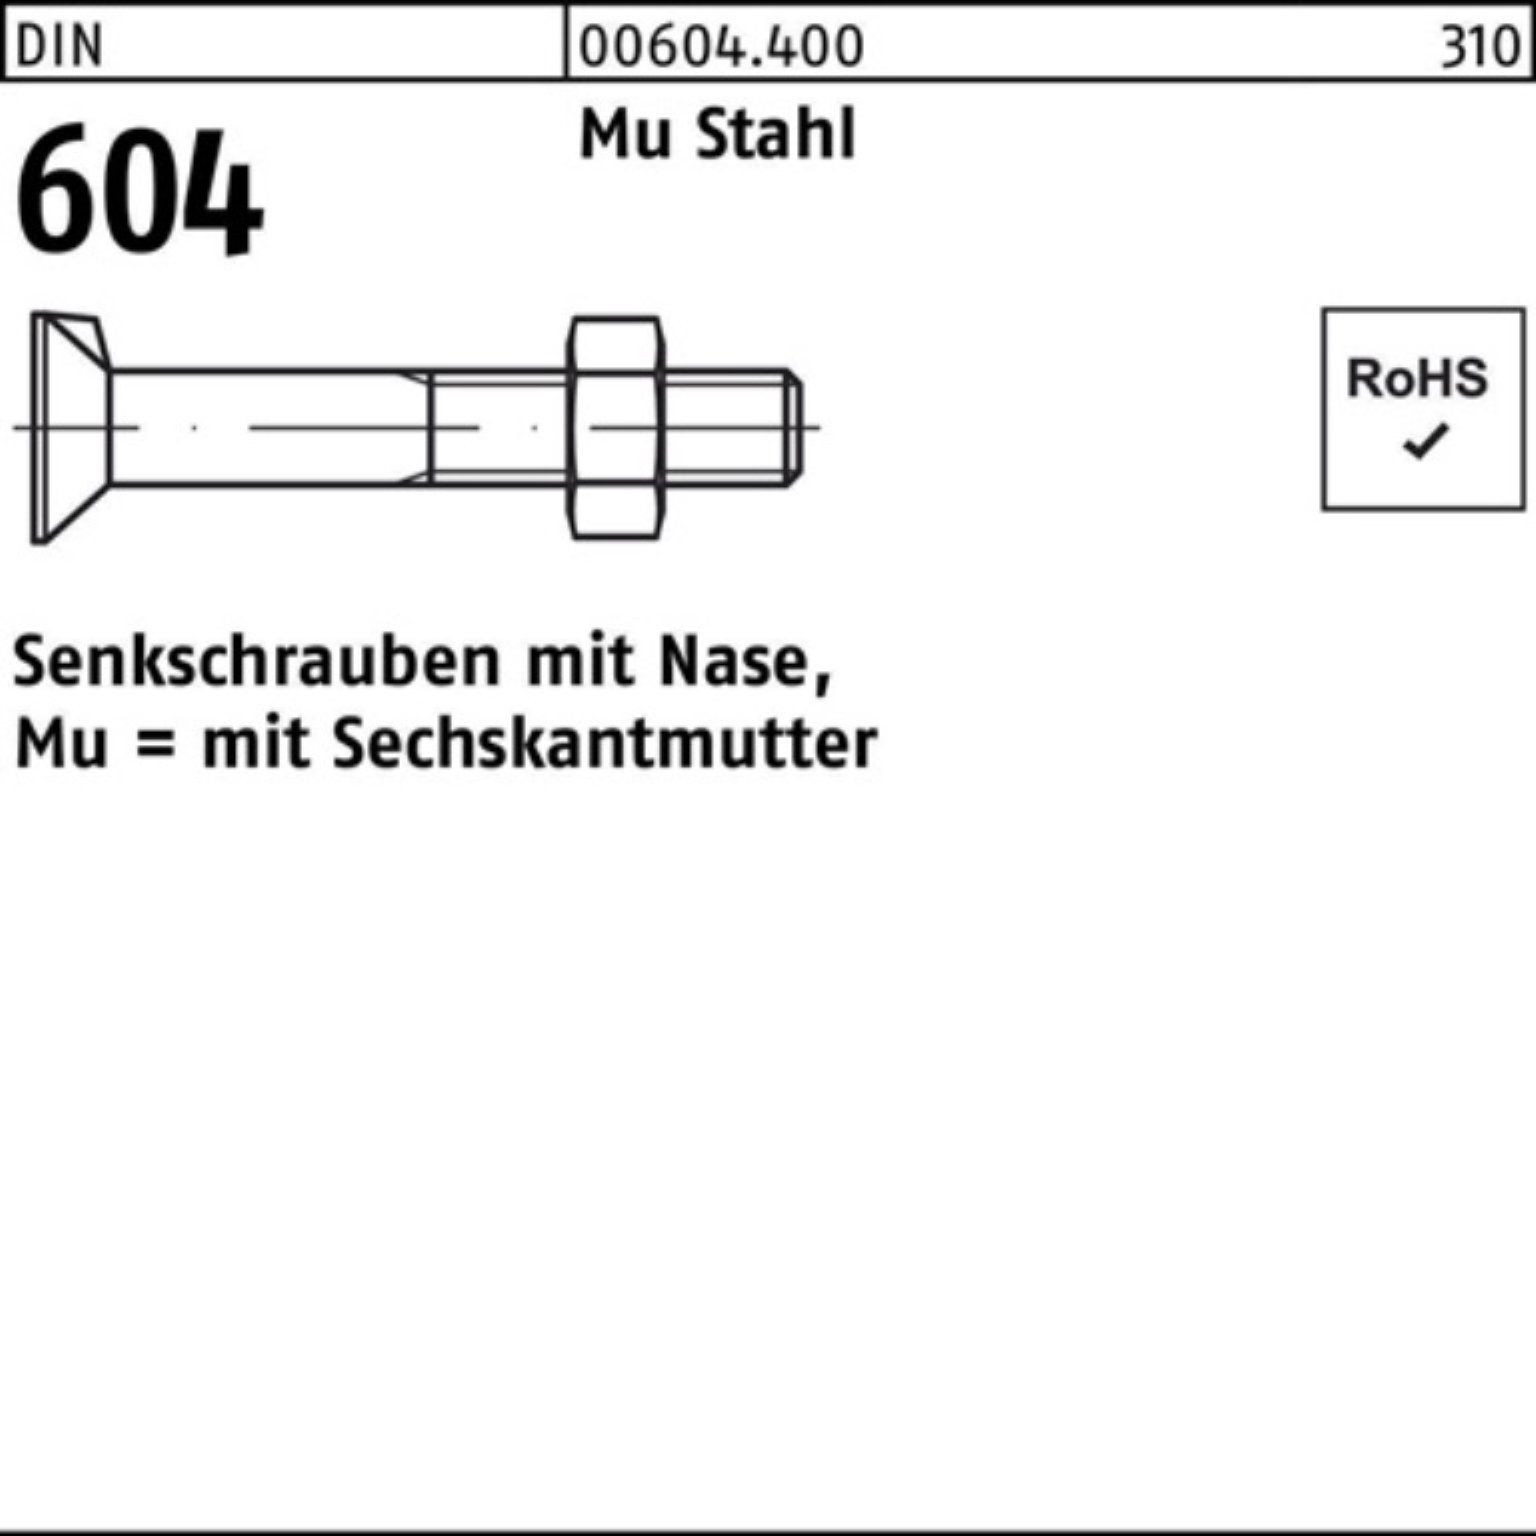 Reyher Senkschraube 200er Pack Senkschraube DIN 604 Nase/6-ktmutter M10x 30 Mu Stahl 4.6 2